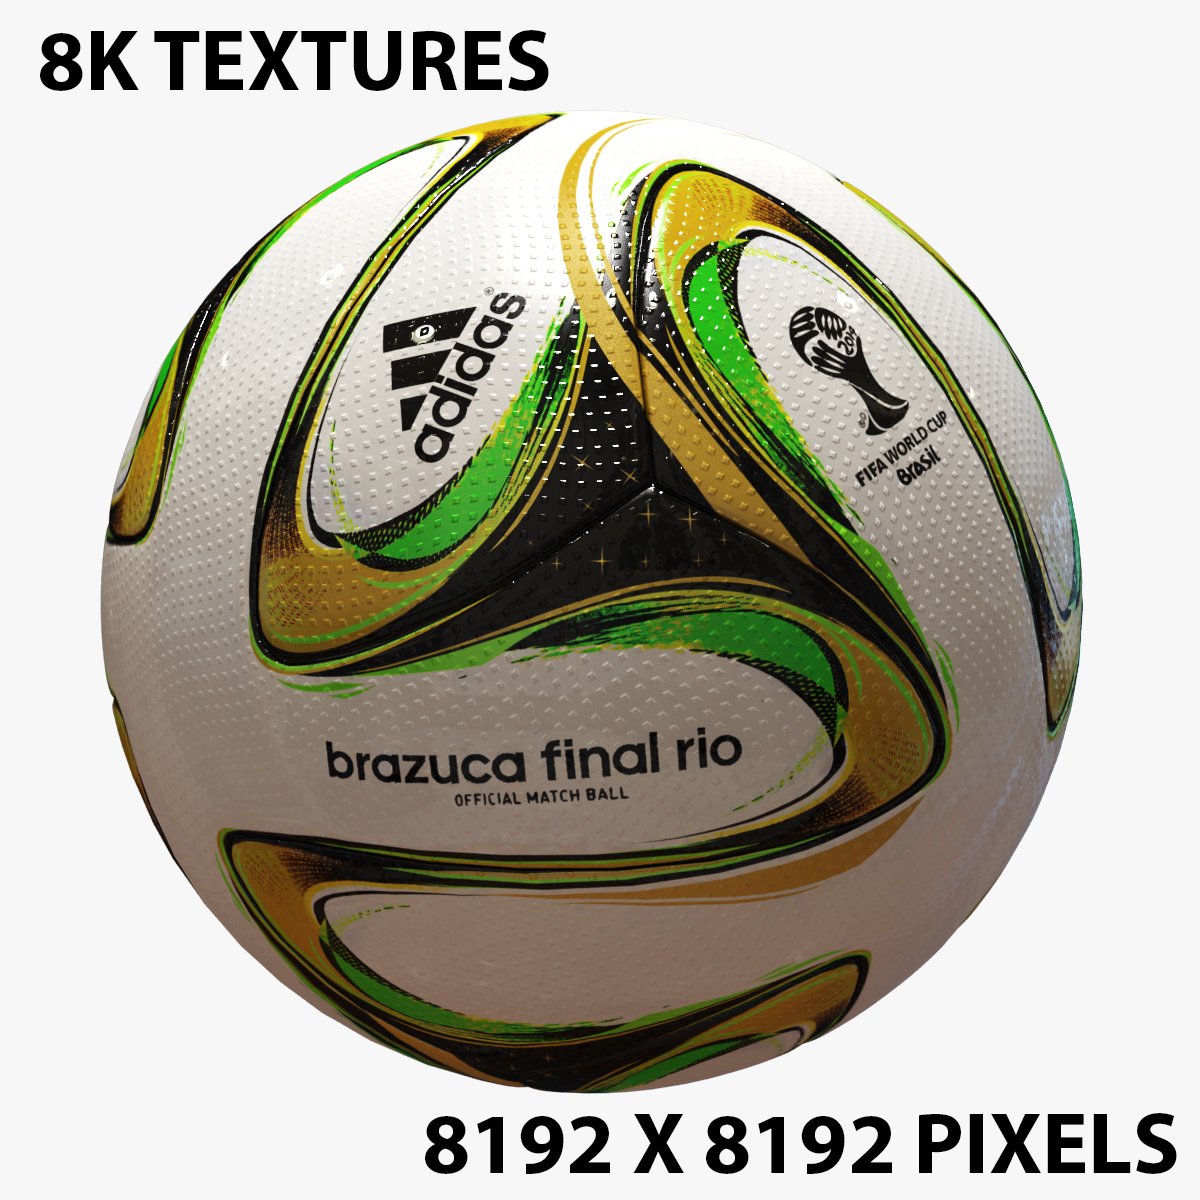 Adidas Original Match Ball Brazuca Rio Final Ball World Cup 2014 Brazil  Football